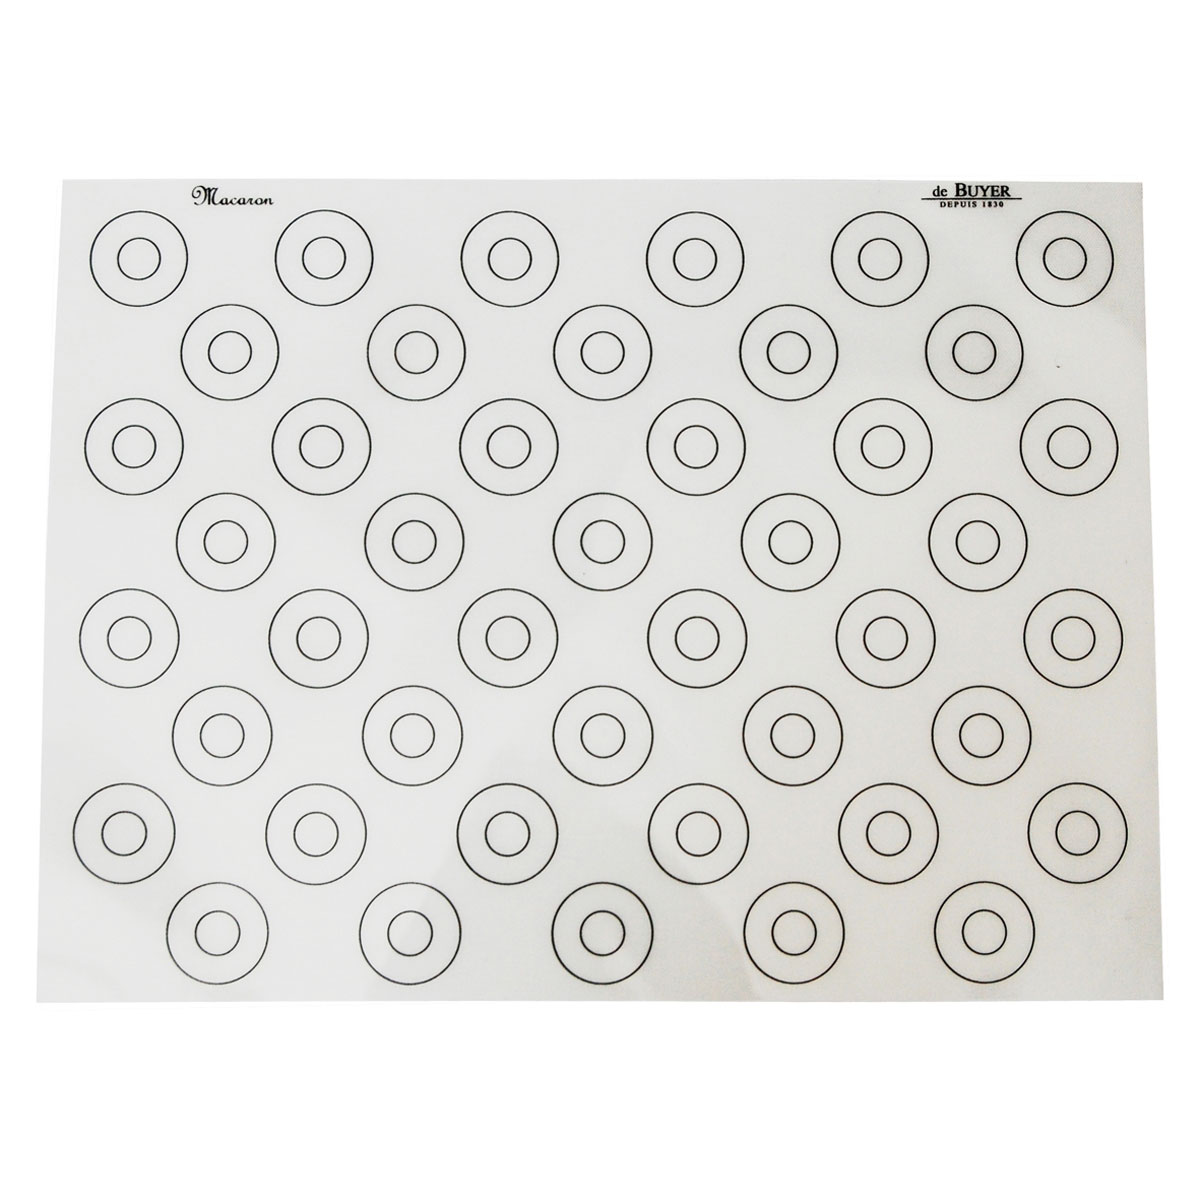 de Buyer Backmatte 40x30 cm mit 44 runden Markierungen - Silikon